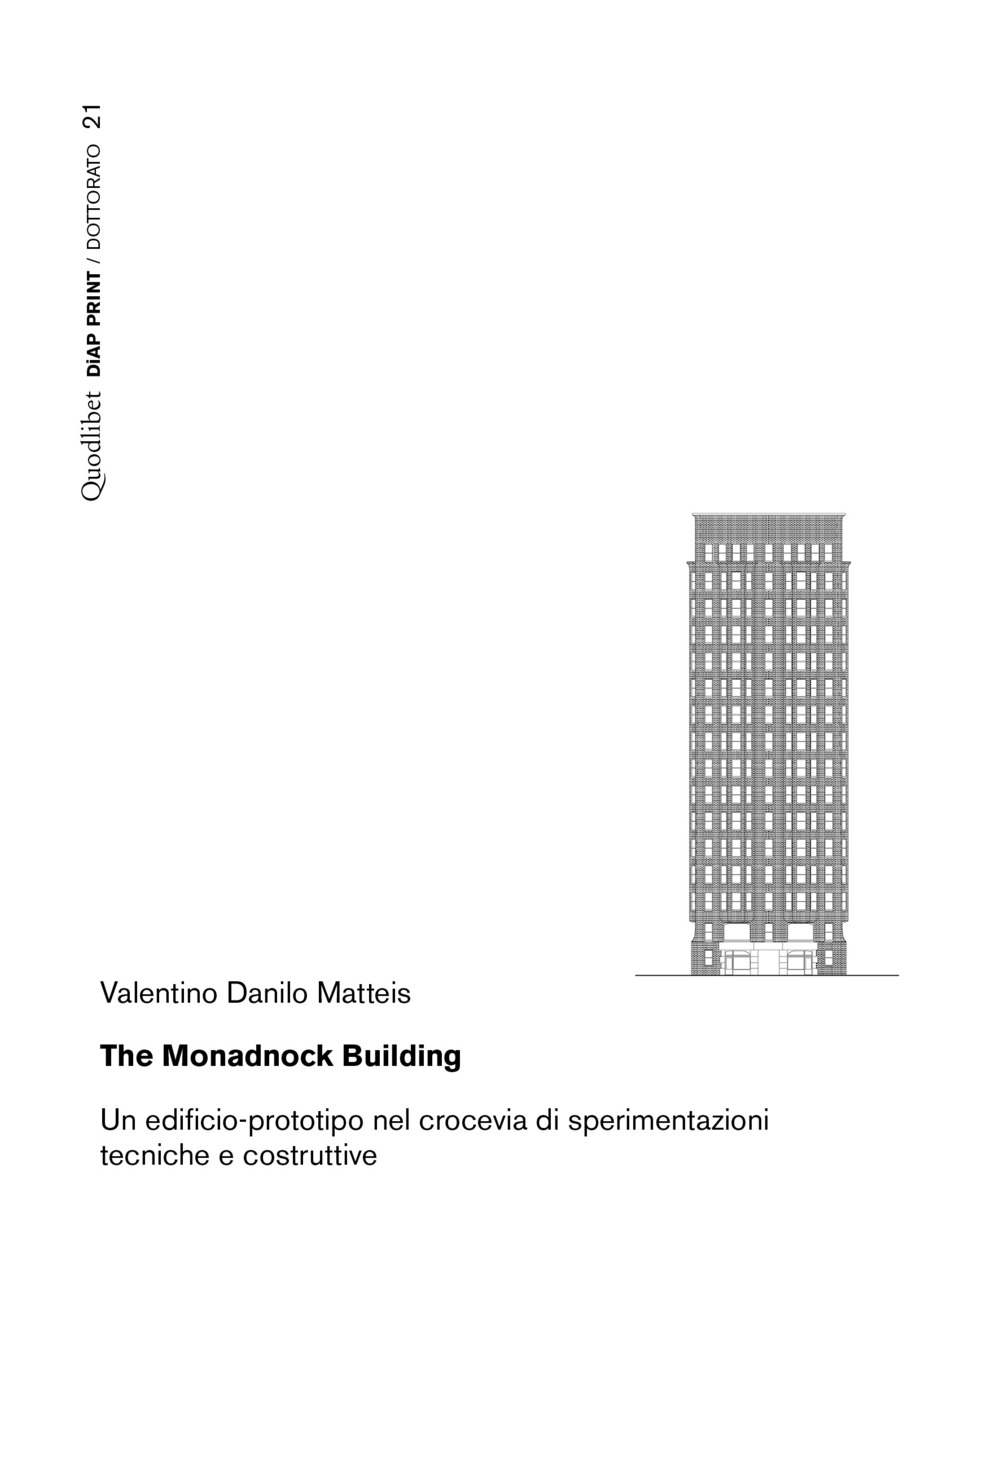 MONADNOCK BUILDING. UN EDIFICIO-PROTOTIPO NEL CROCEVIA DI SPERIMENTAZIONI TECNICHE E COSTRUTTIVE (THE)